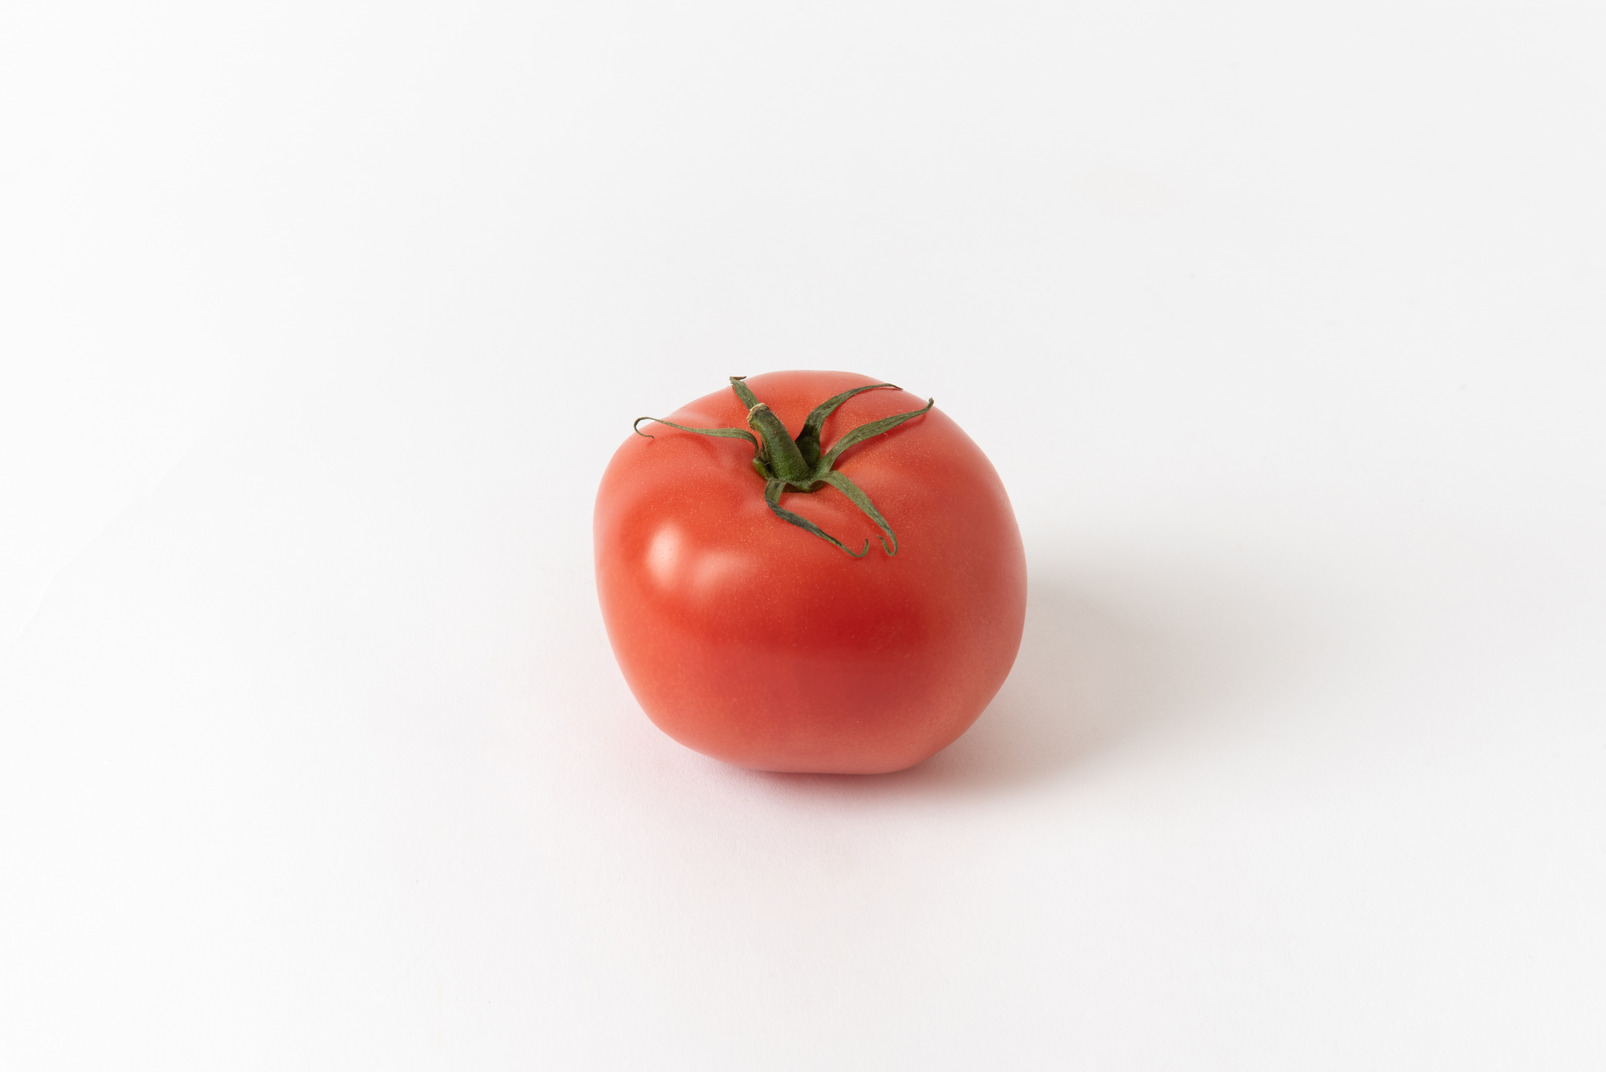 Single tomato on a white background